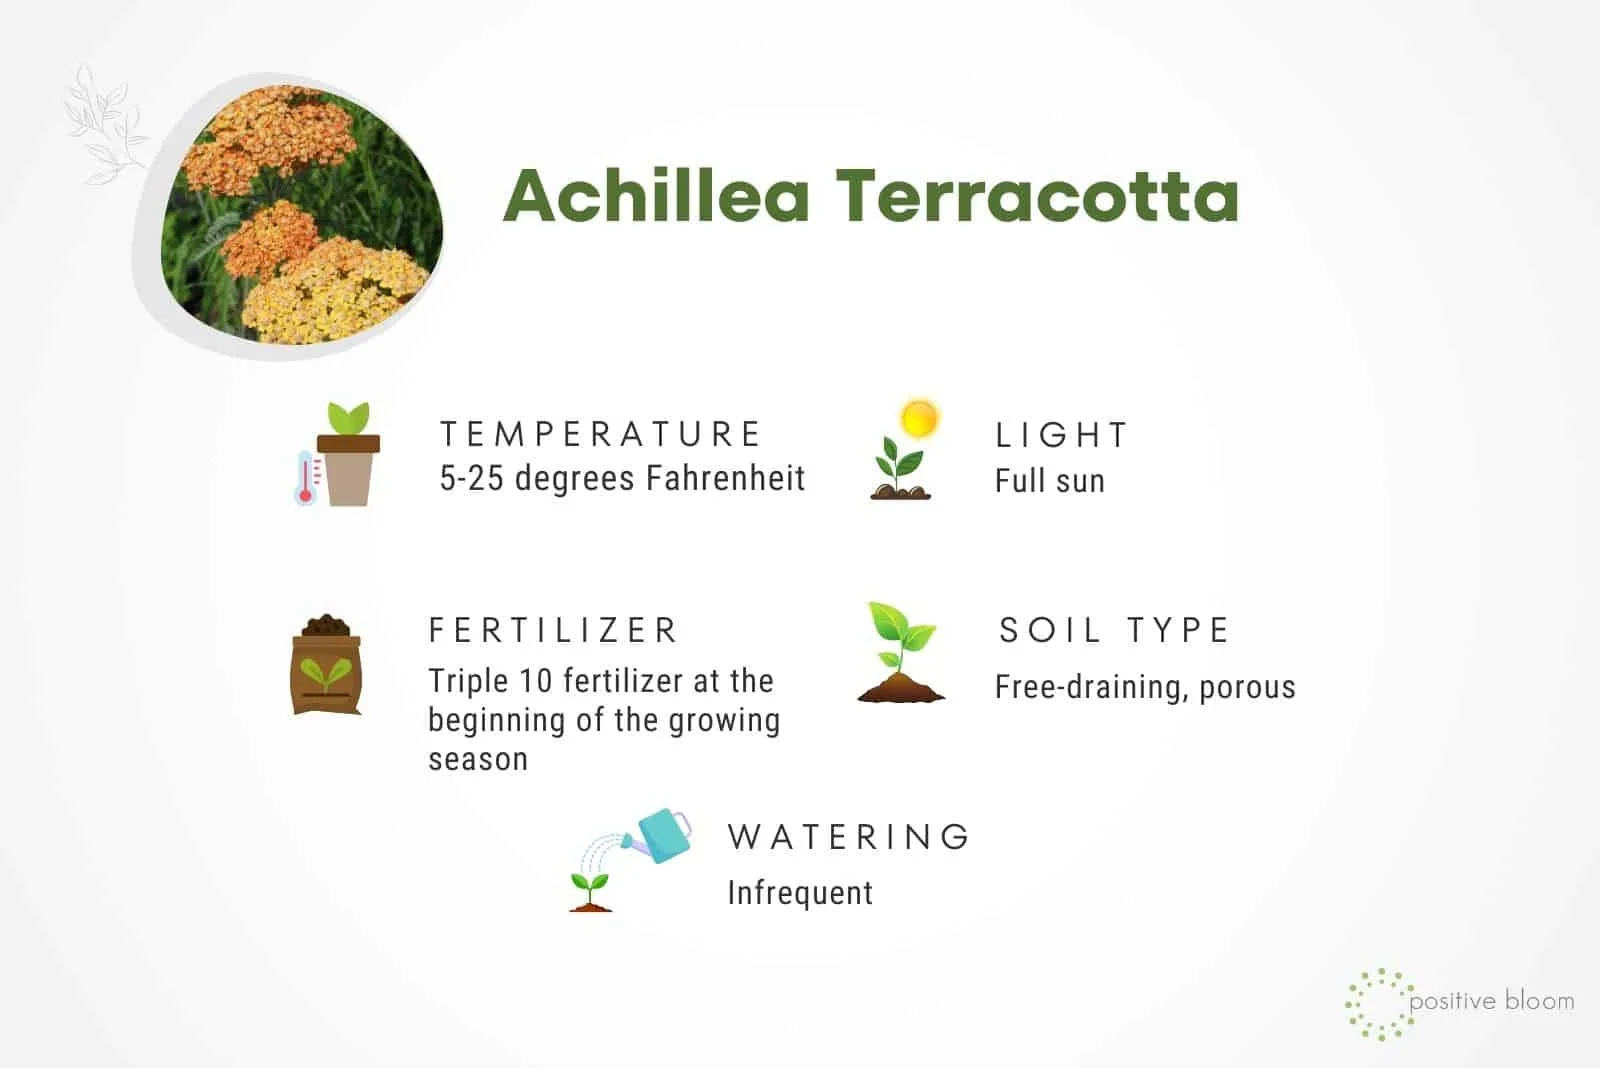 Achillea Terracotta